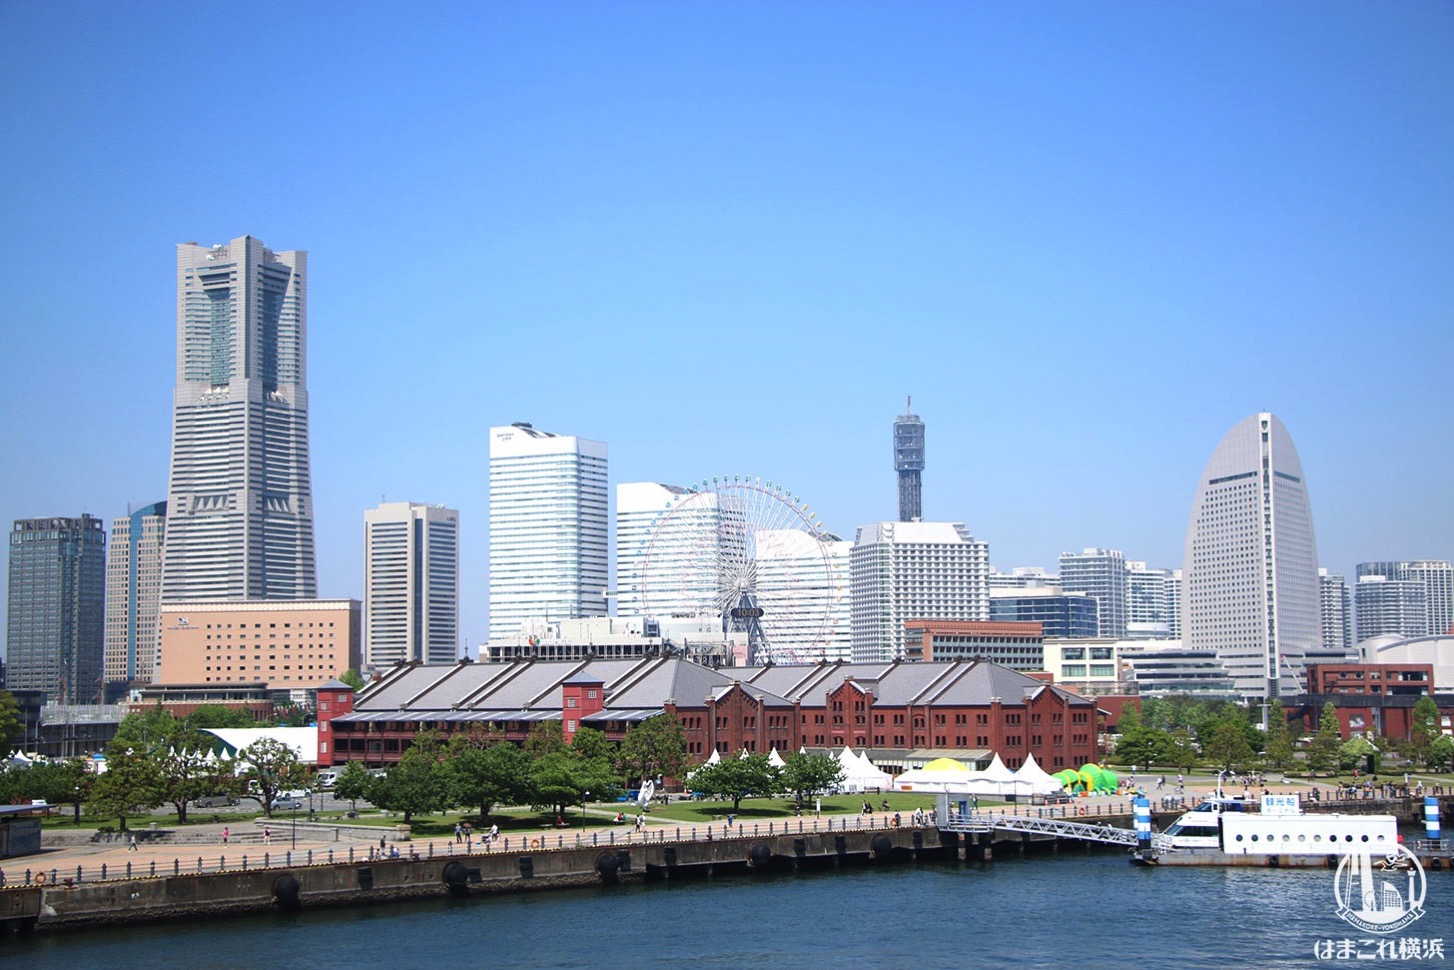 横浜港大さん橋国際客船ターミナル 屋上から見たみなとみらいの景色